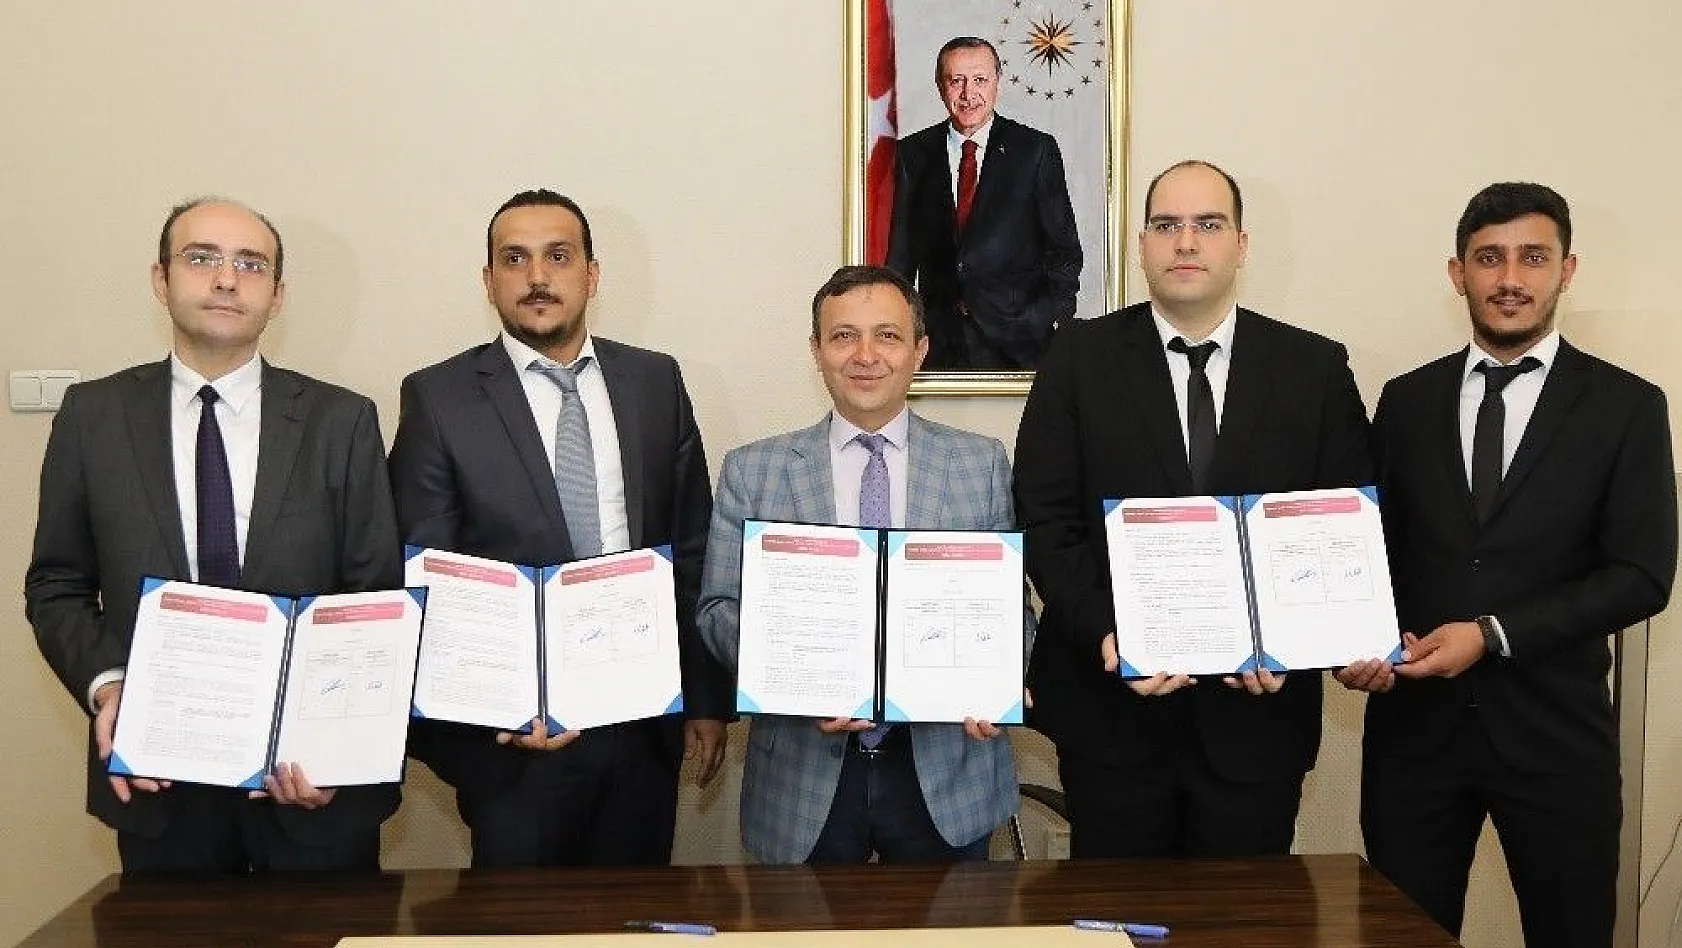 Erciyes Üniversitesi Kendine Ait Bir Patenti Daha Lisansladı
